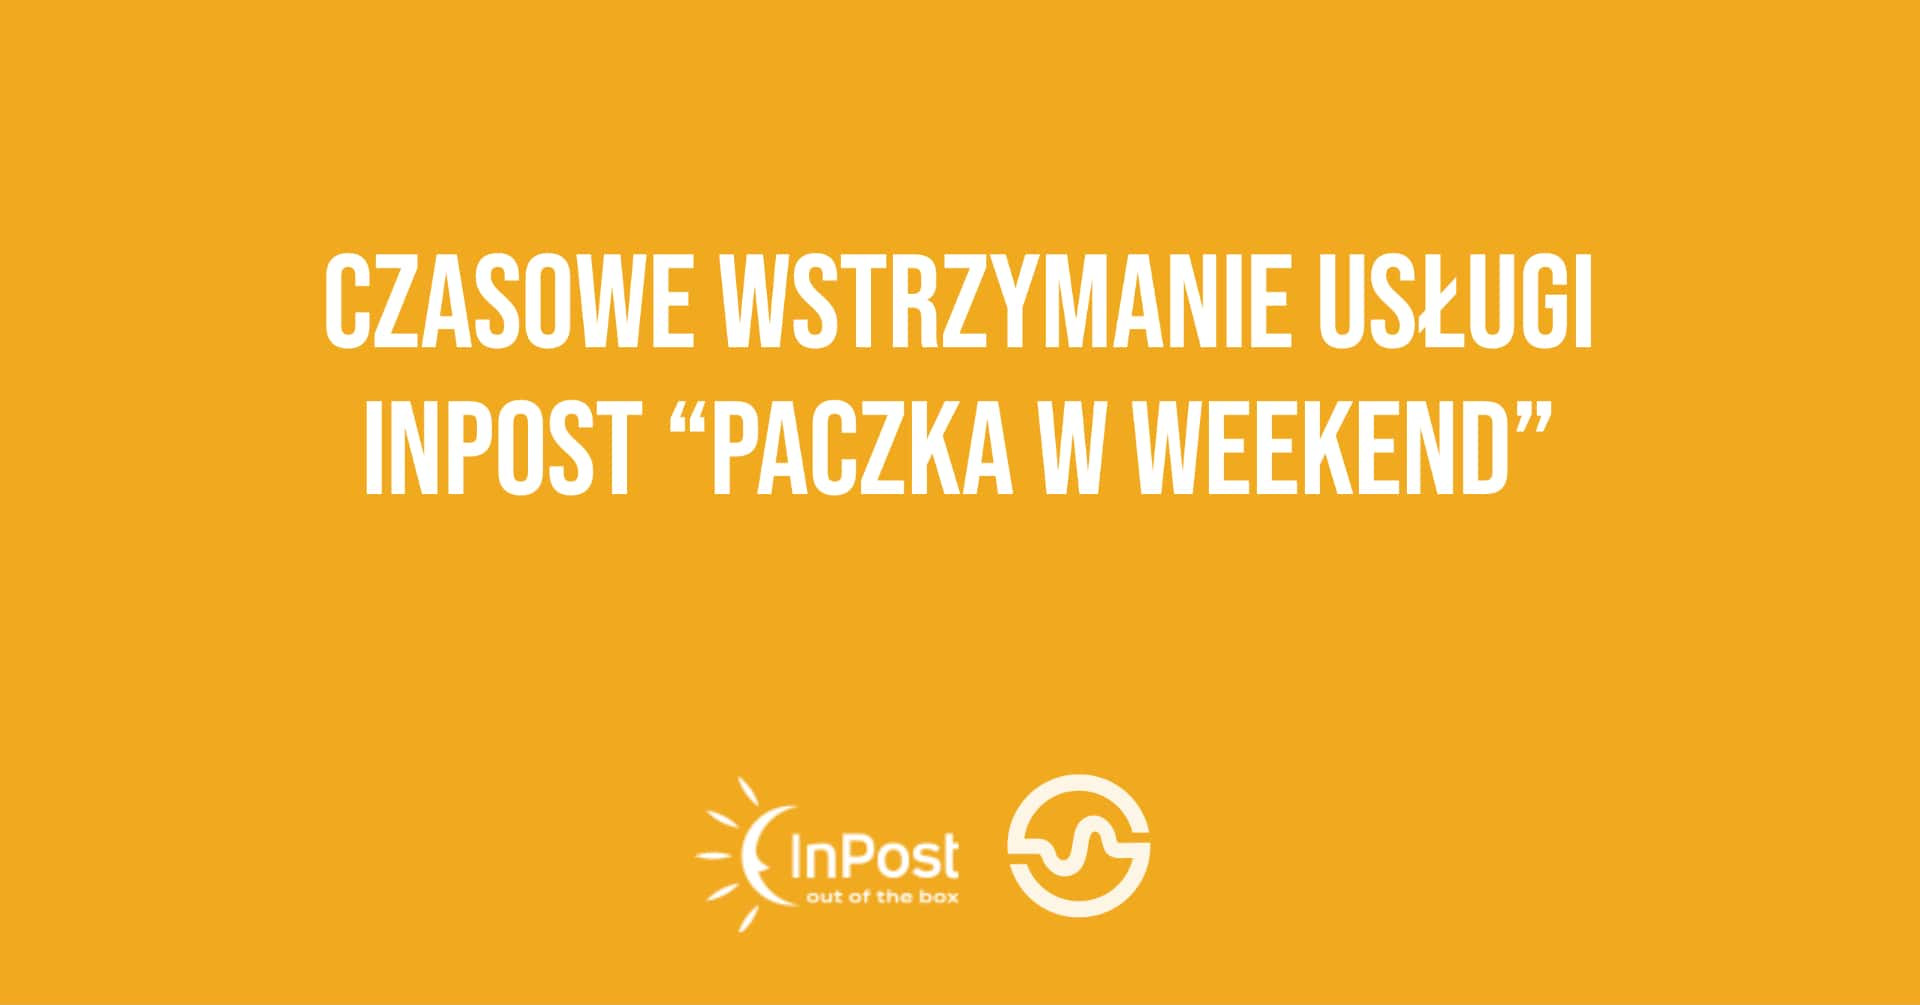 Wstrzymanie usługi InPost "Paczka w weekend"